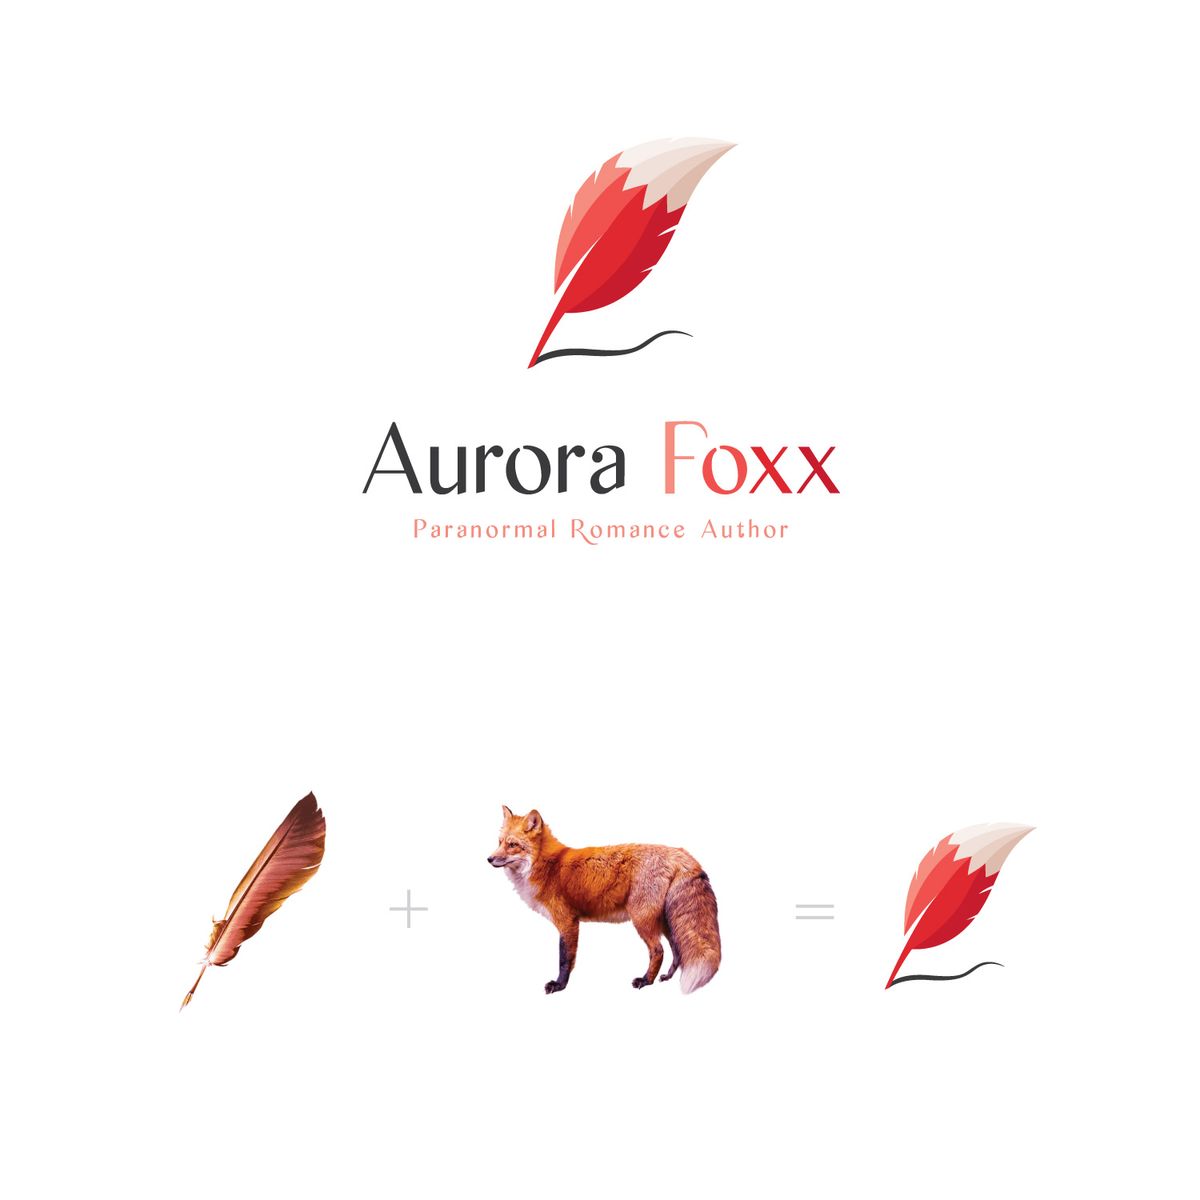 Aurora Foxx Logo Design Book Illustration 1